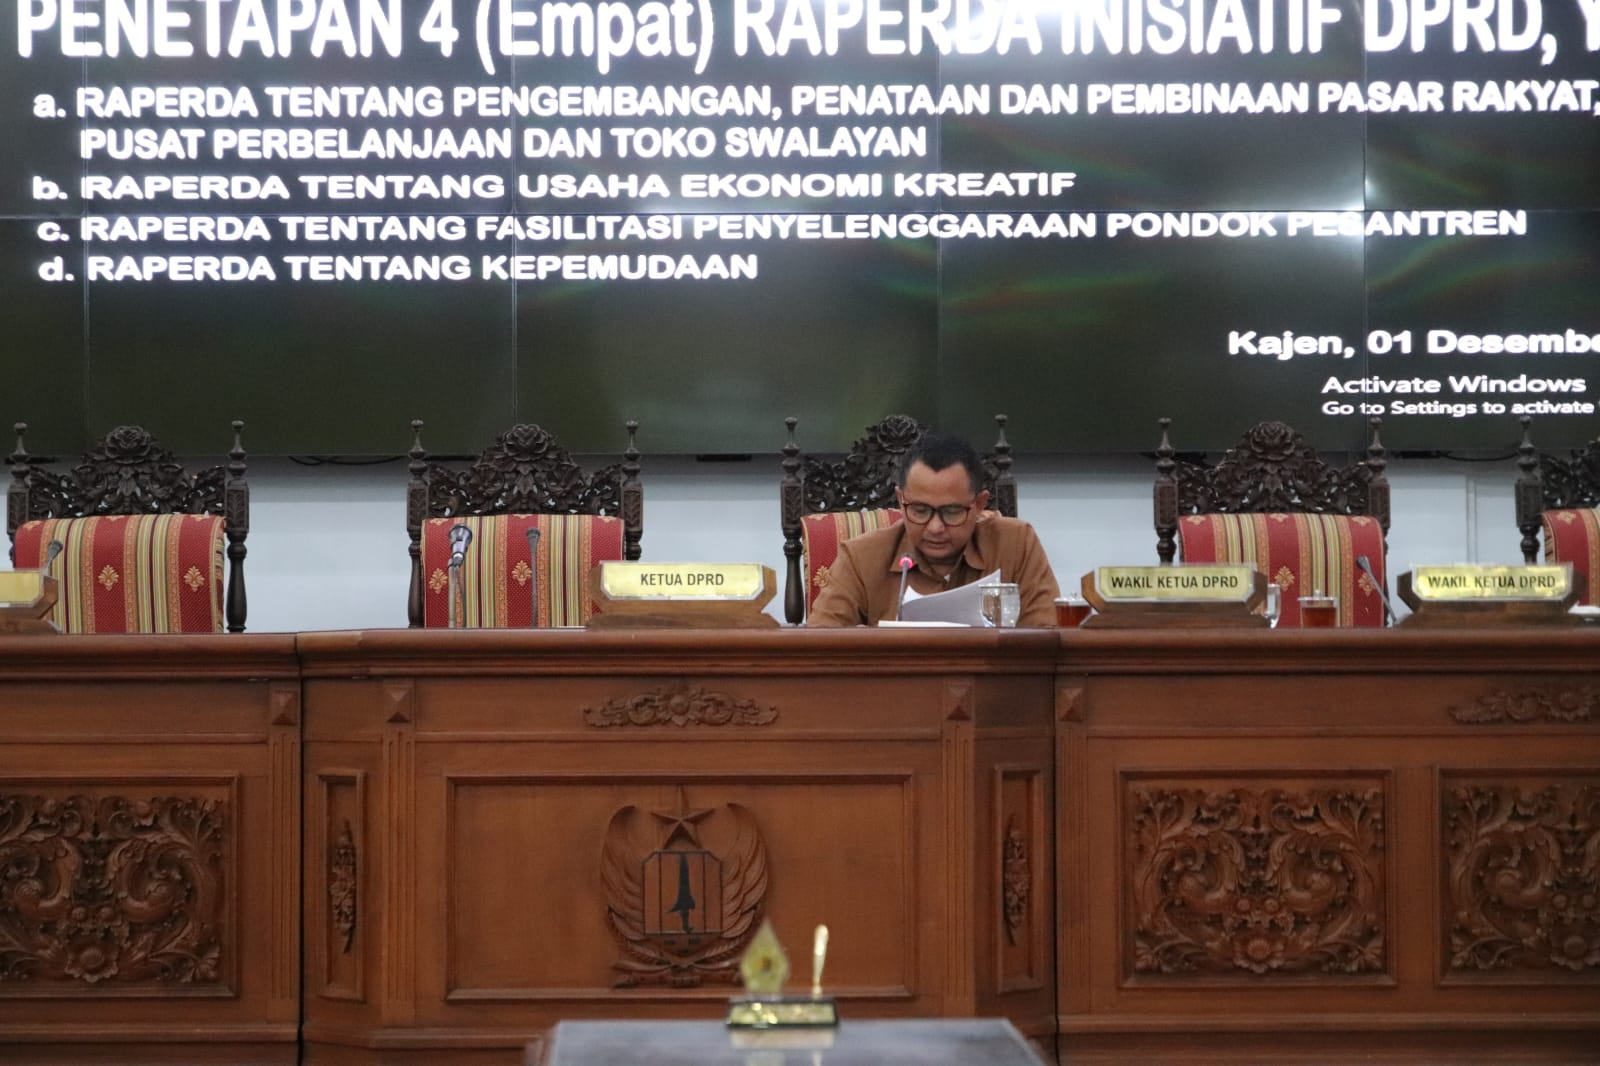 PARIPURNA Penetapan Empat Raperda Inisiatif DPRD Kabupaten Pekalongan